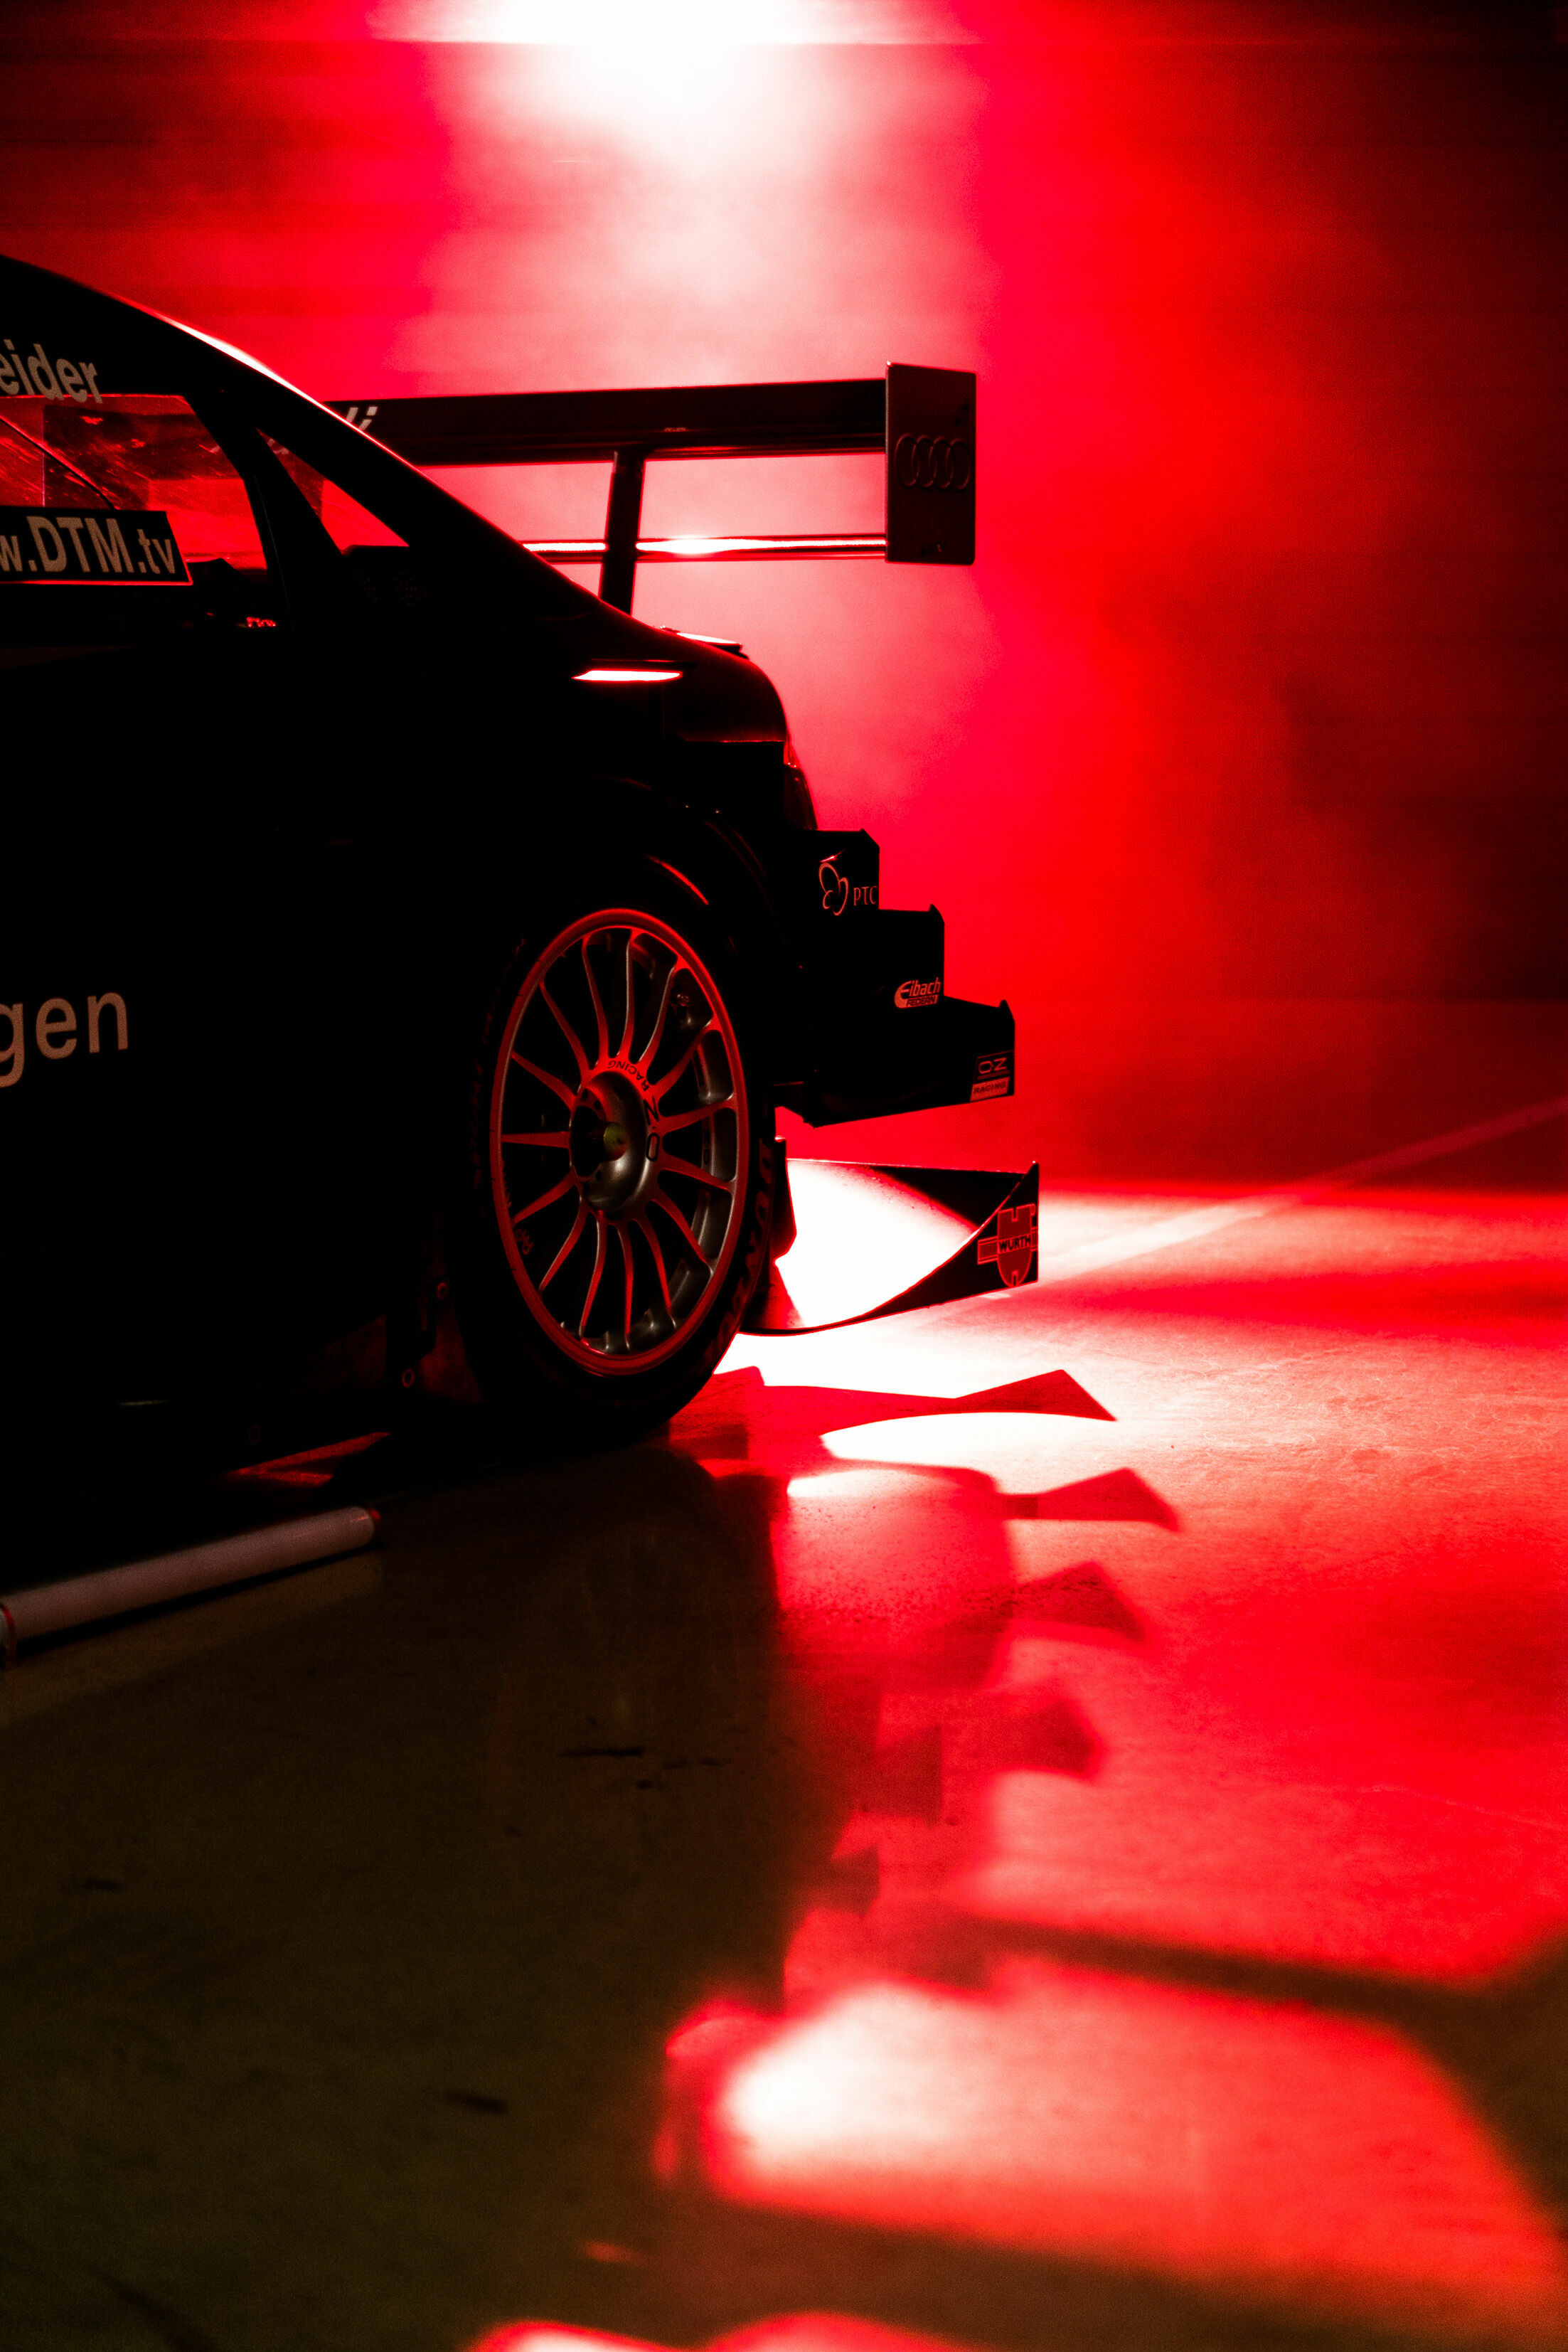 Audi DTM Champions